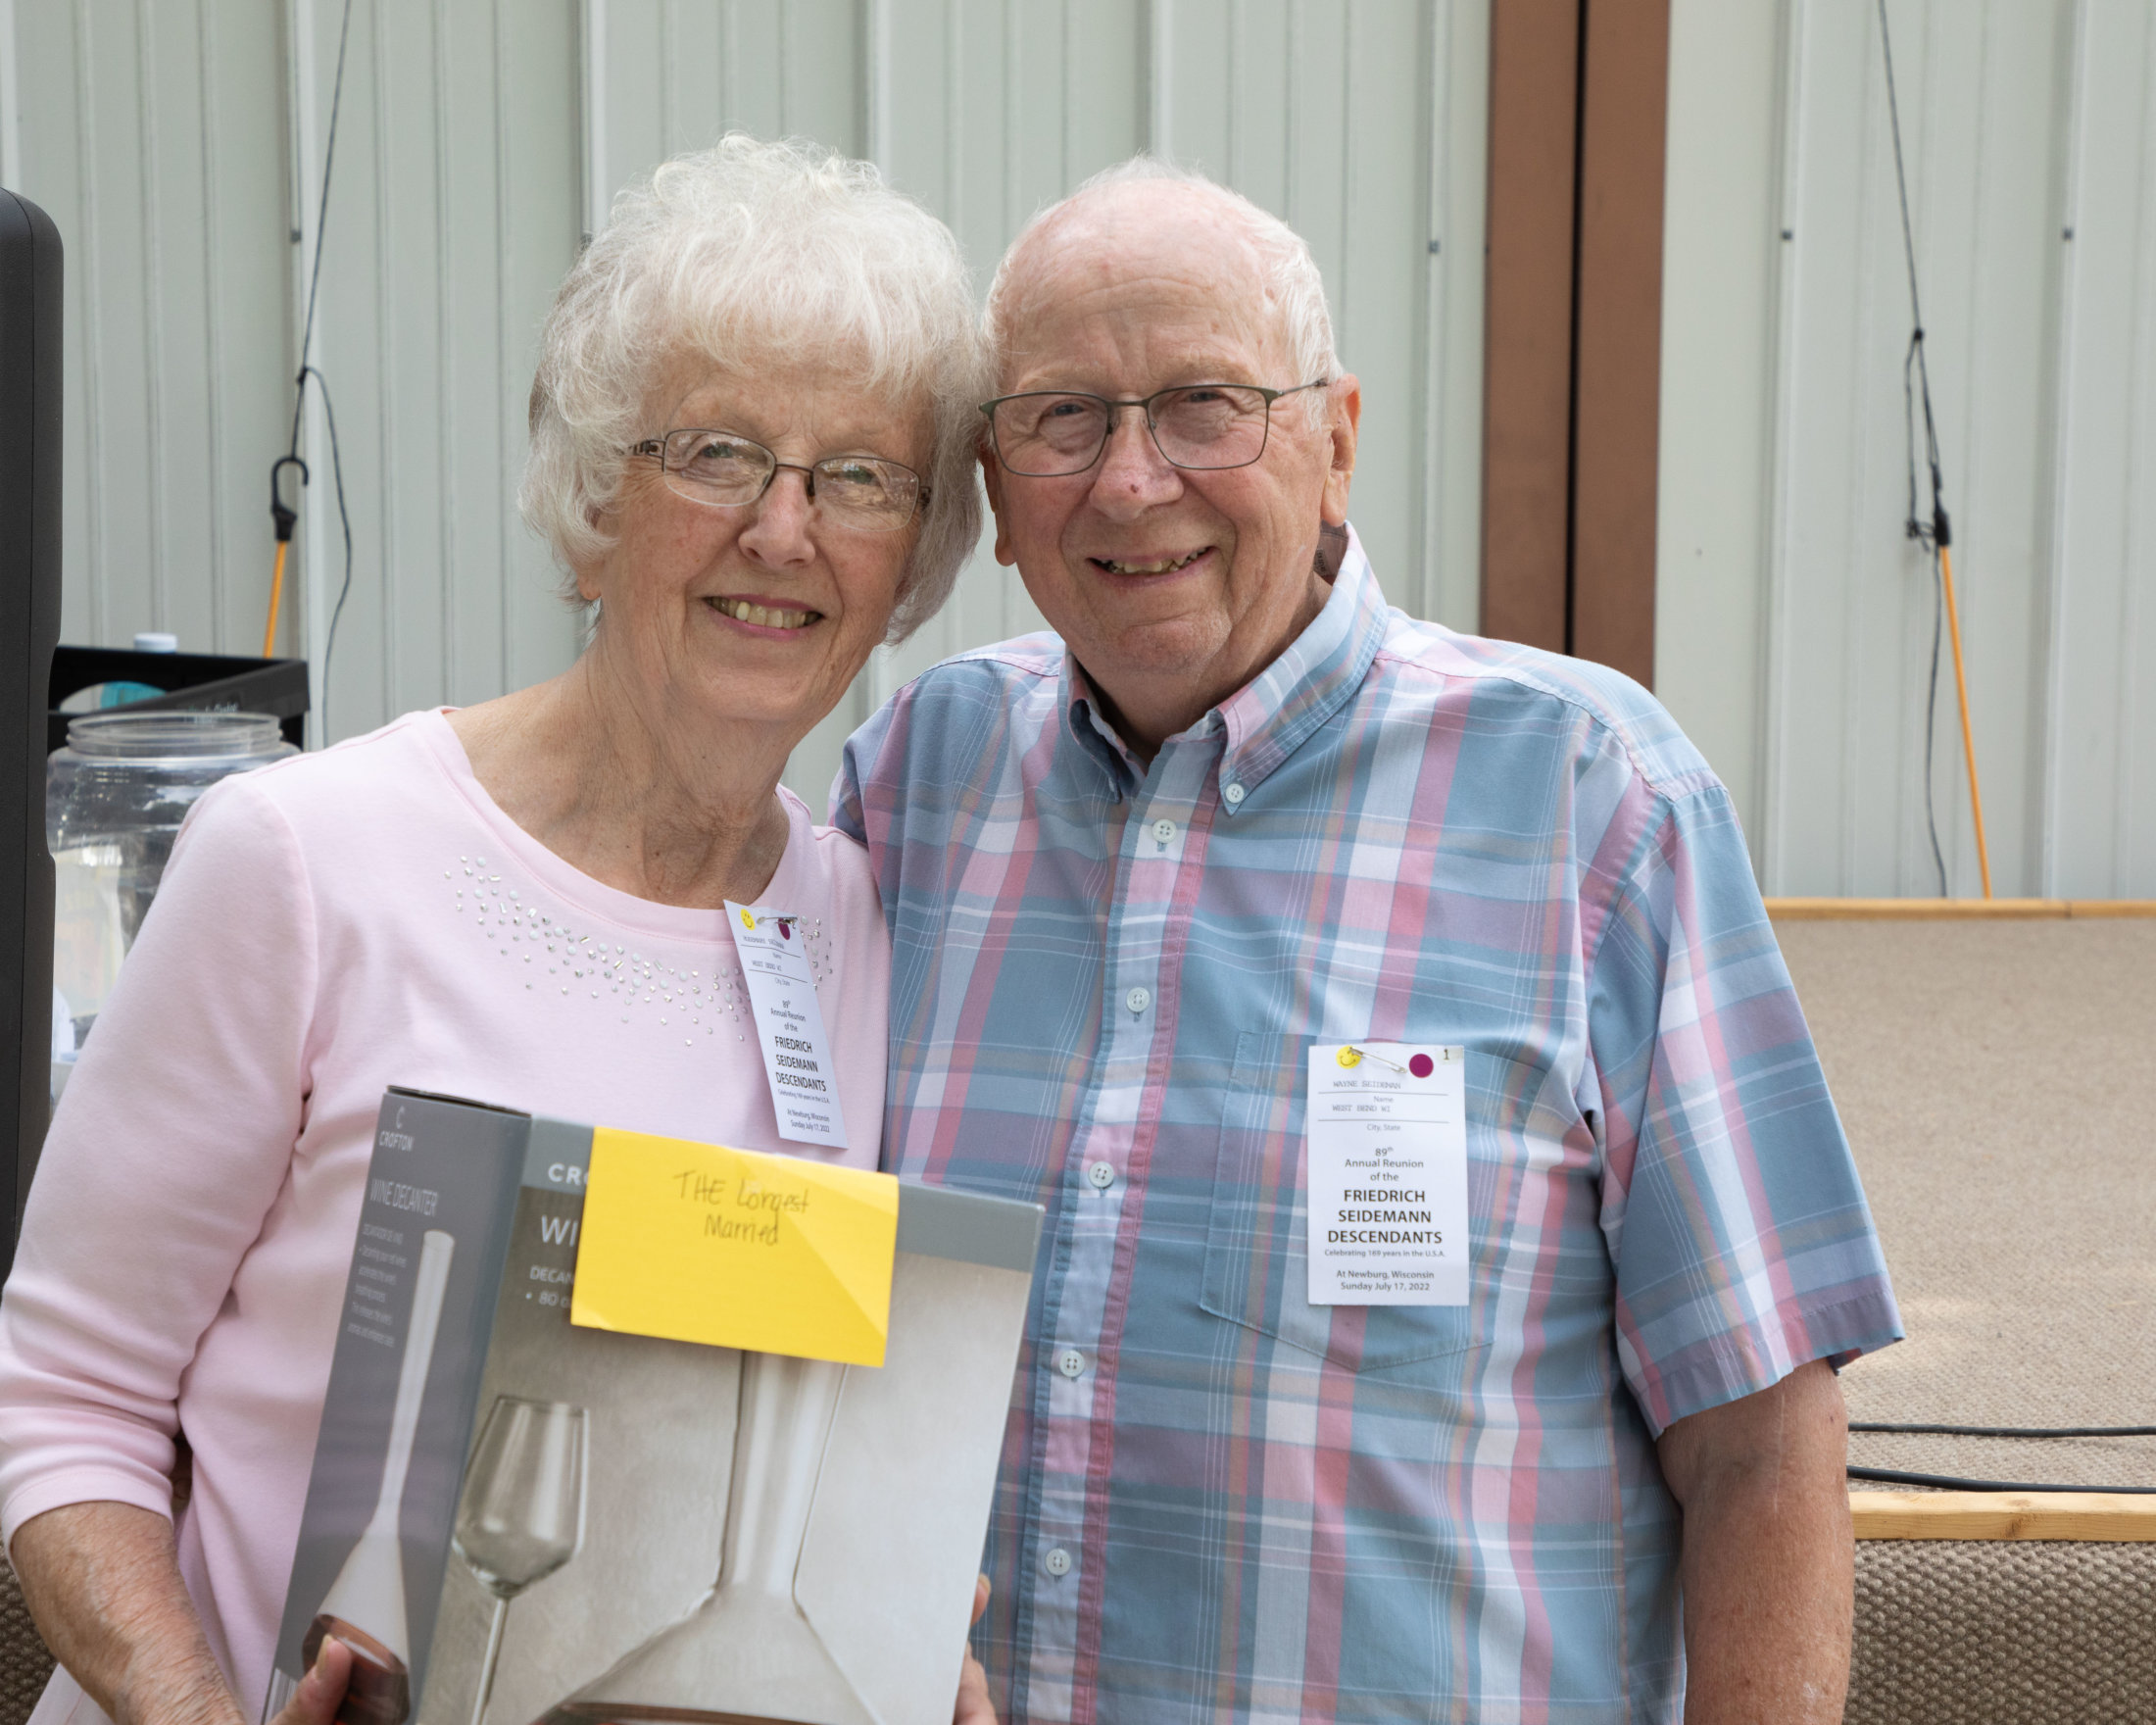 Rosemary & Wayne - longest married - 61 years